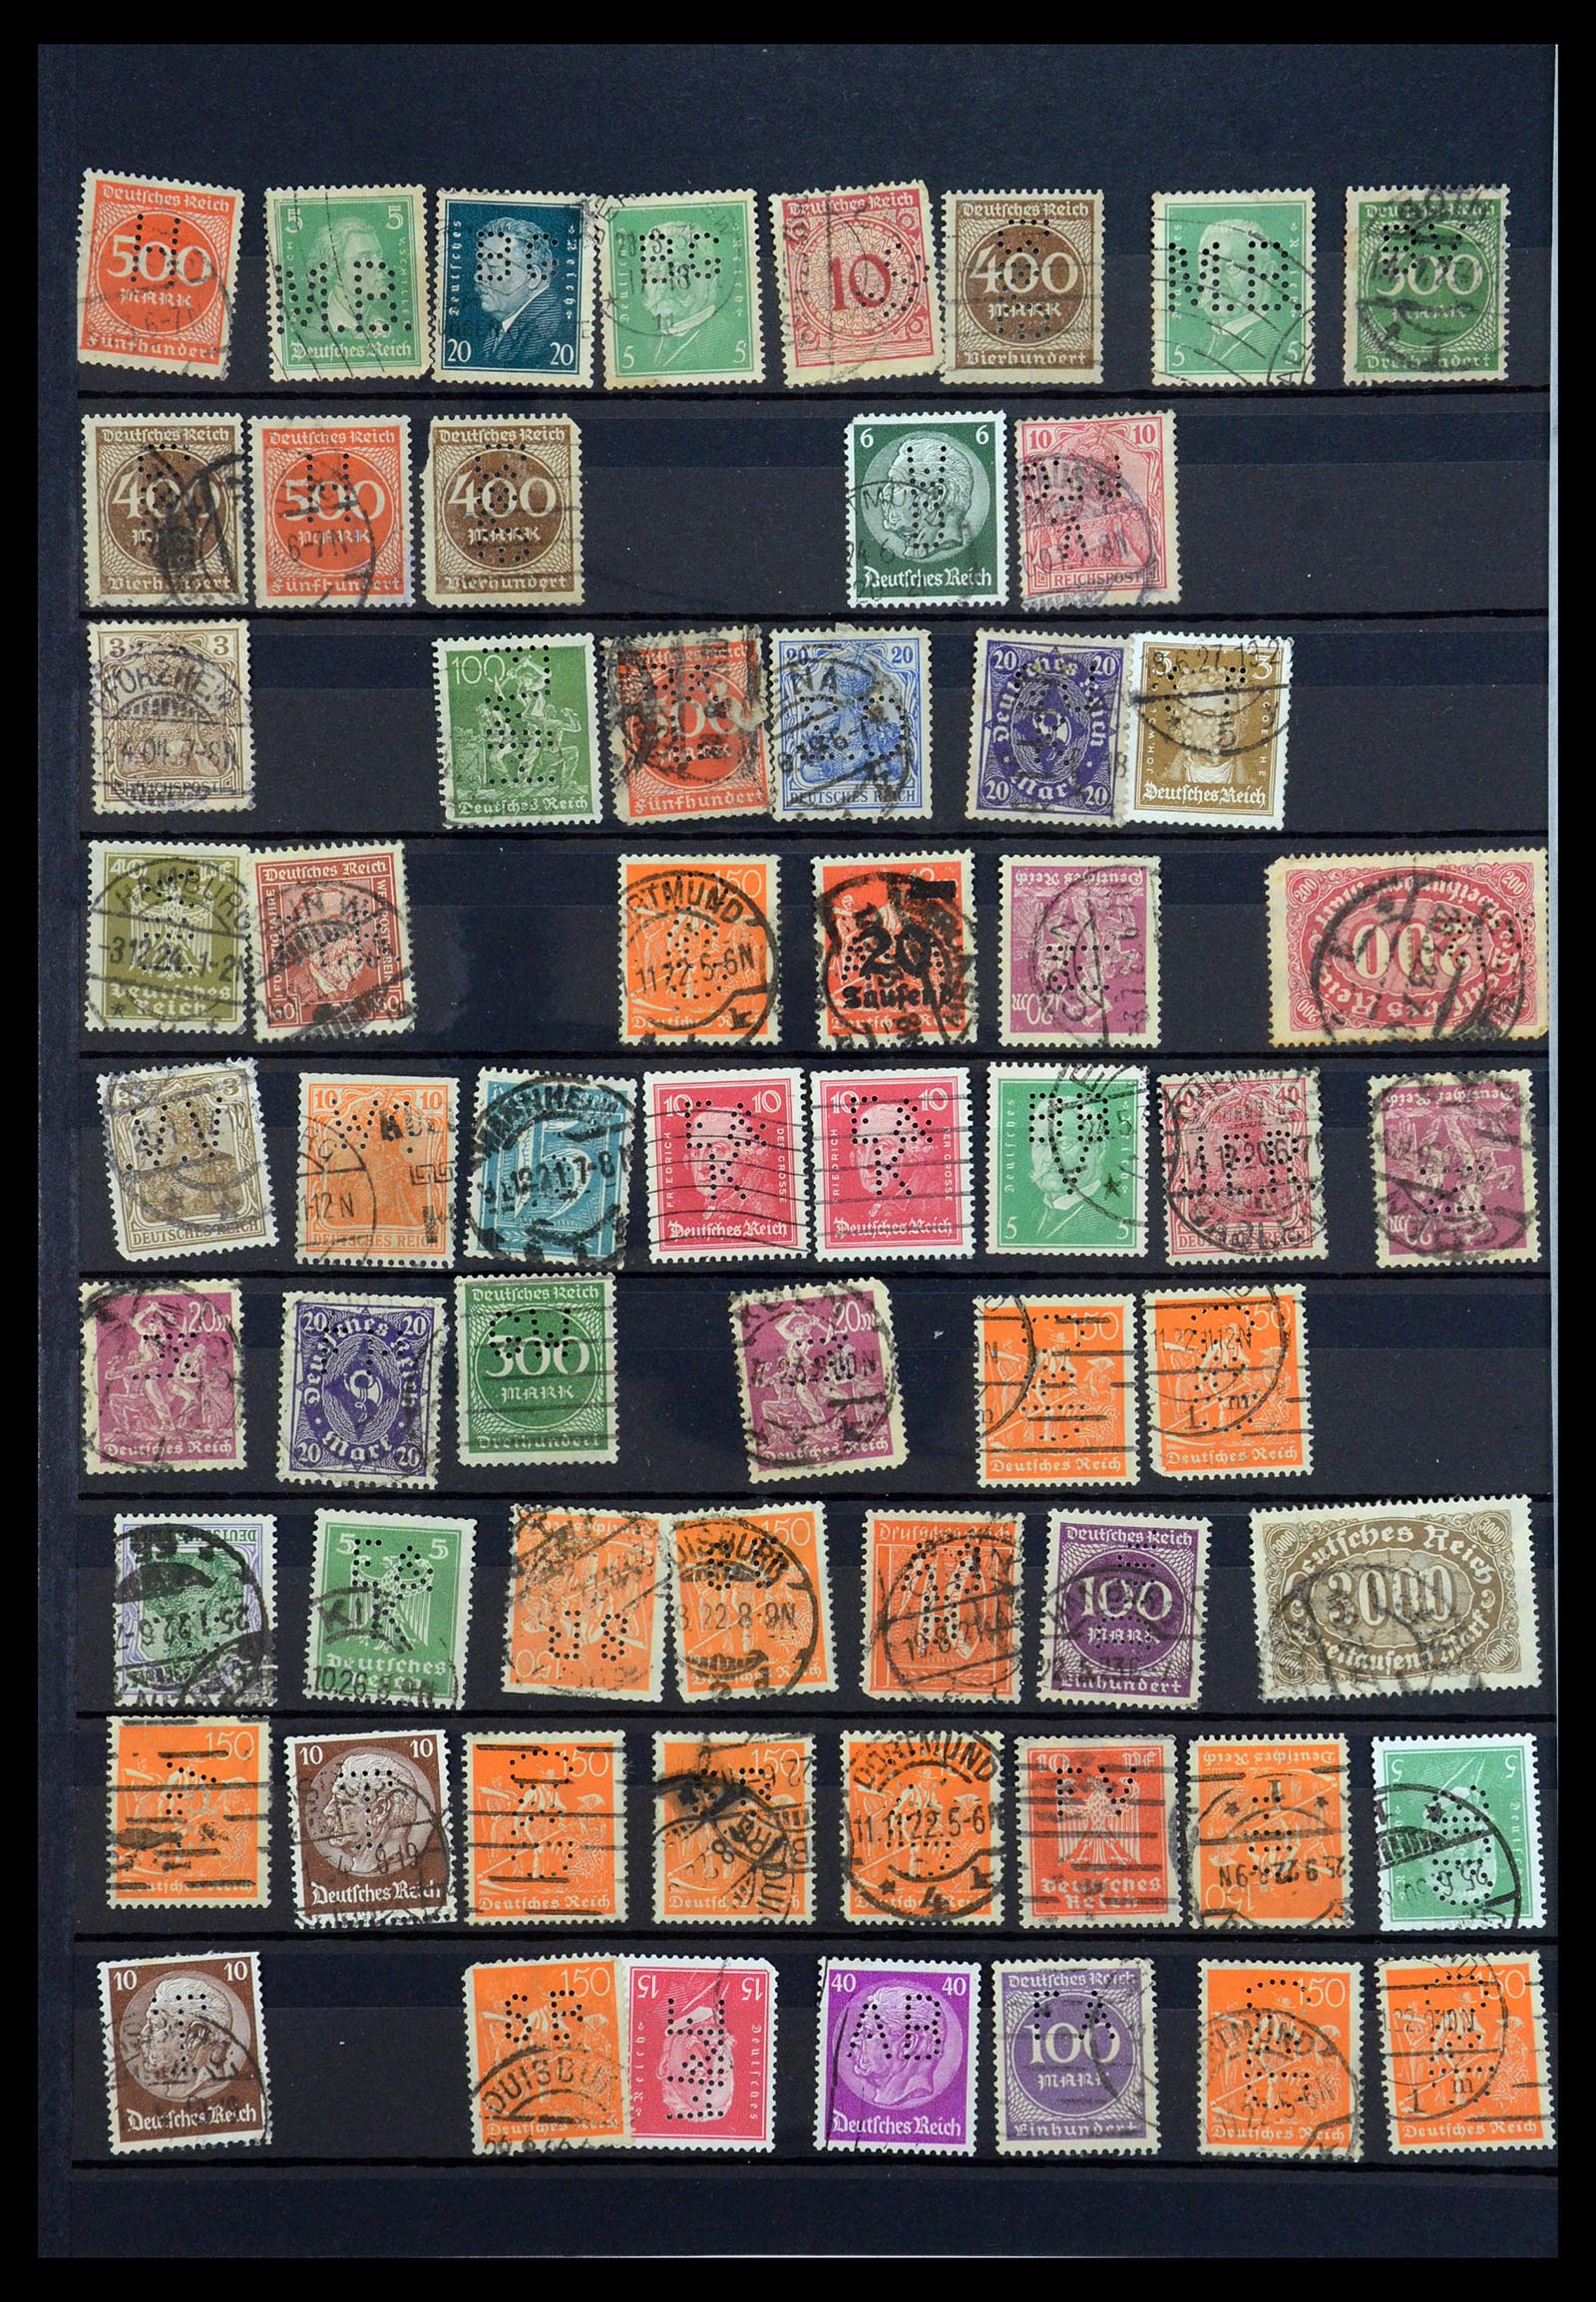 35183 058 - Stamp Collection 35183 German Reich perfins 1880-1945.